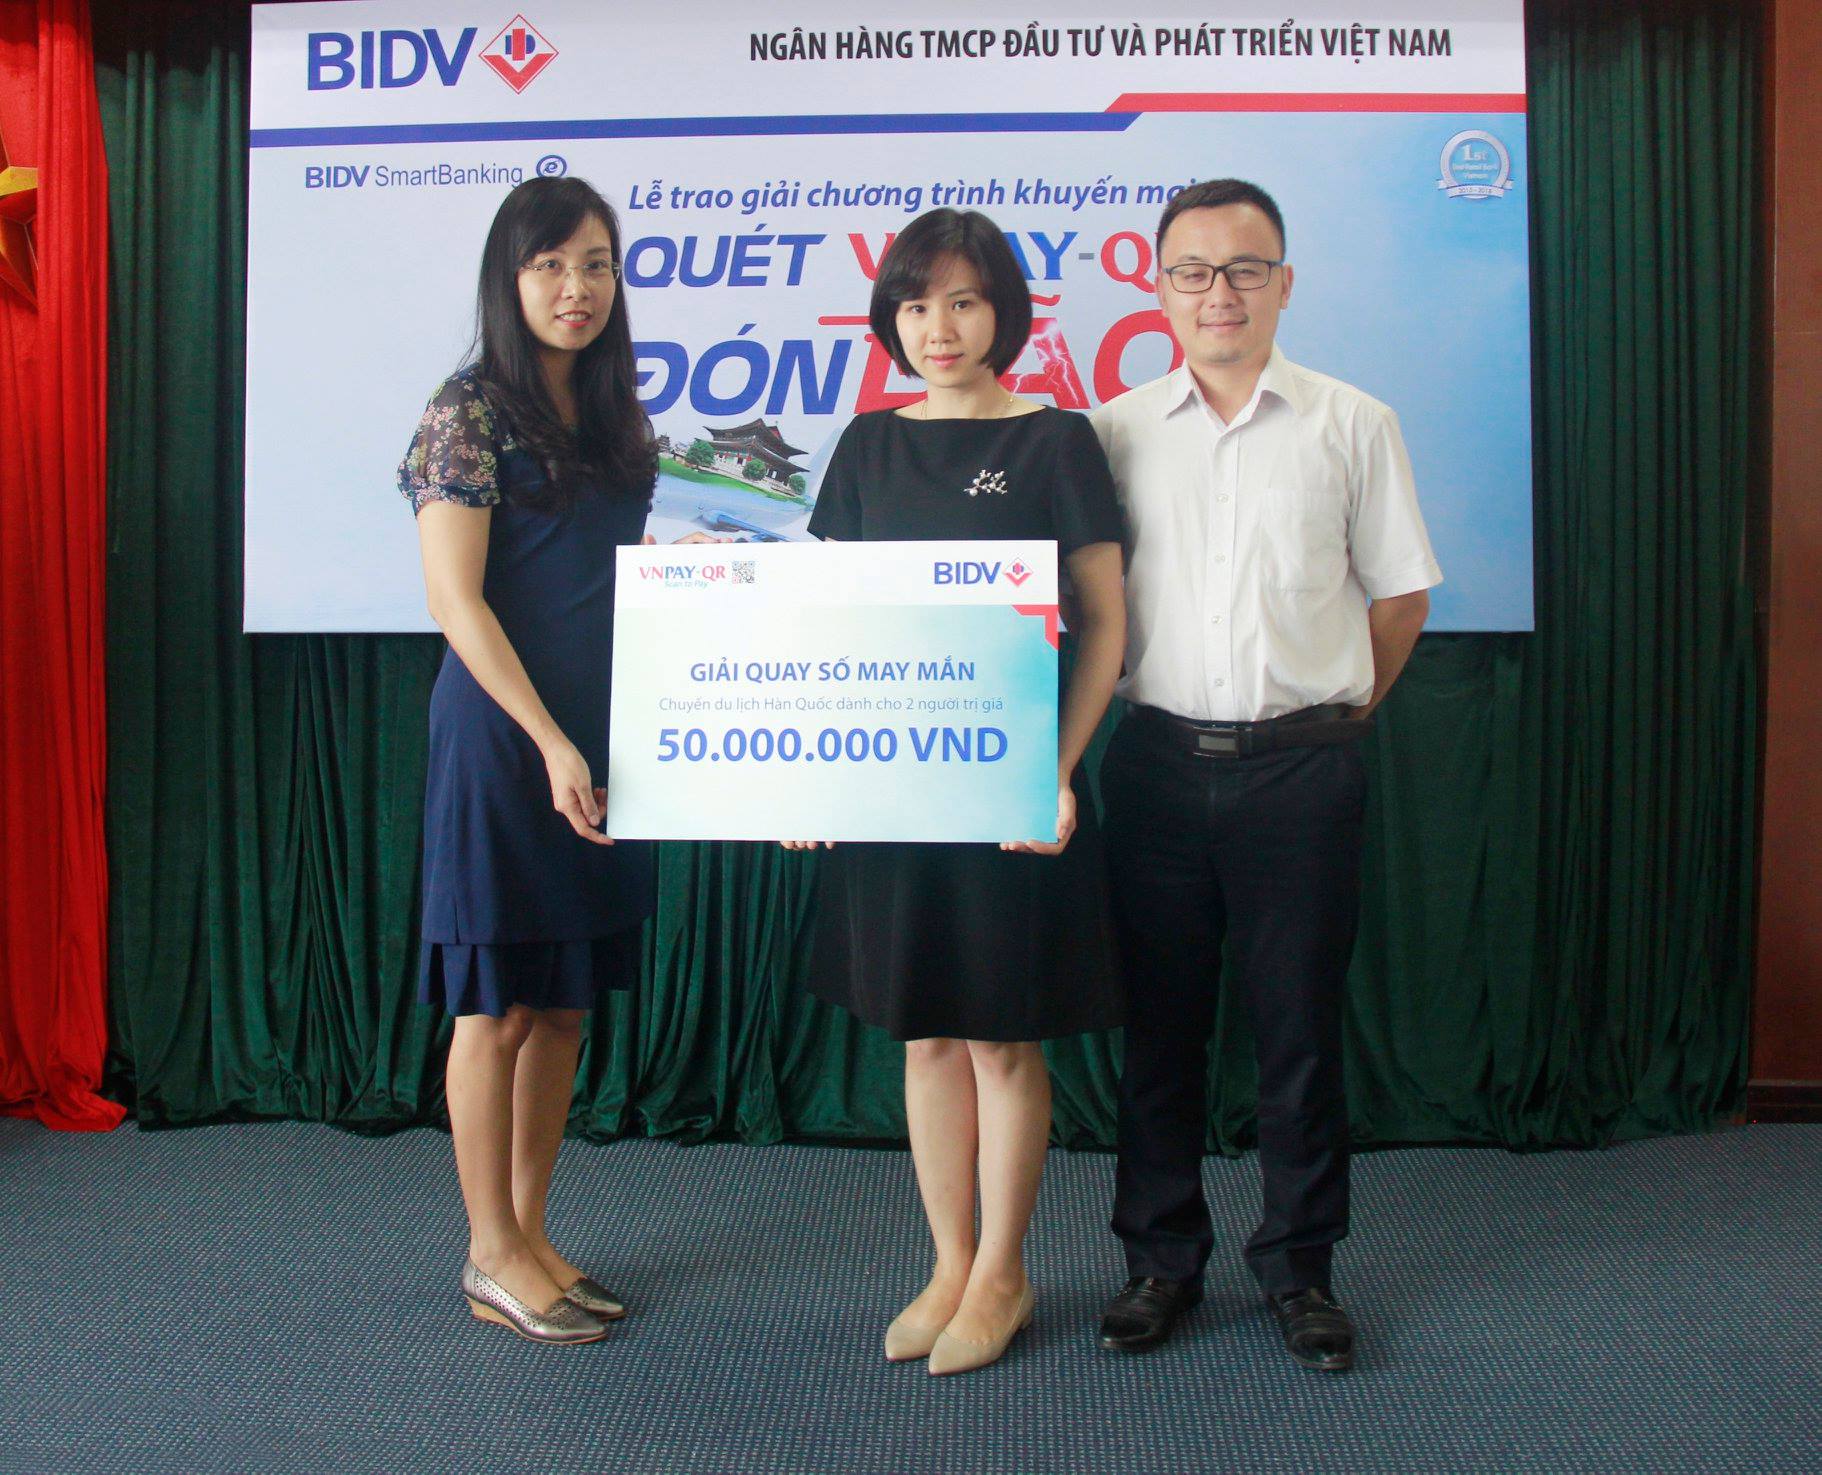 VNPAY và BIDV tổ chức trao thưởng Giải đặc biệt chương trình khuyến mại “Quét VNPAY-QR đón bão quà tặng”